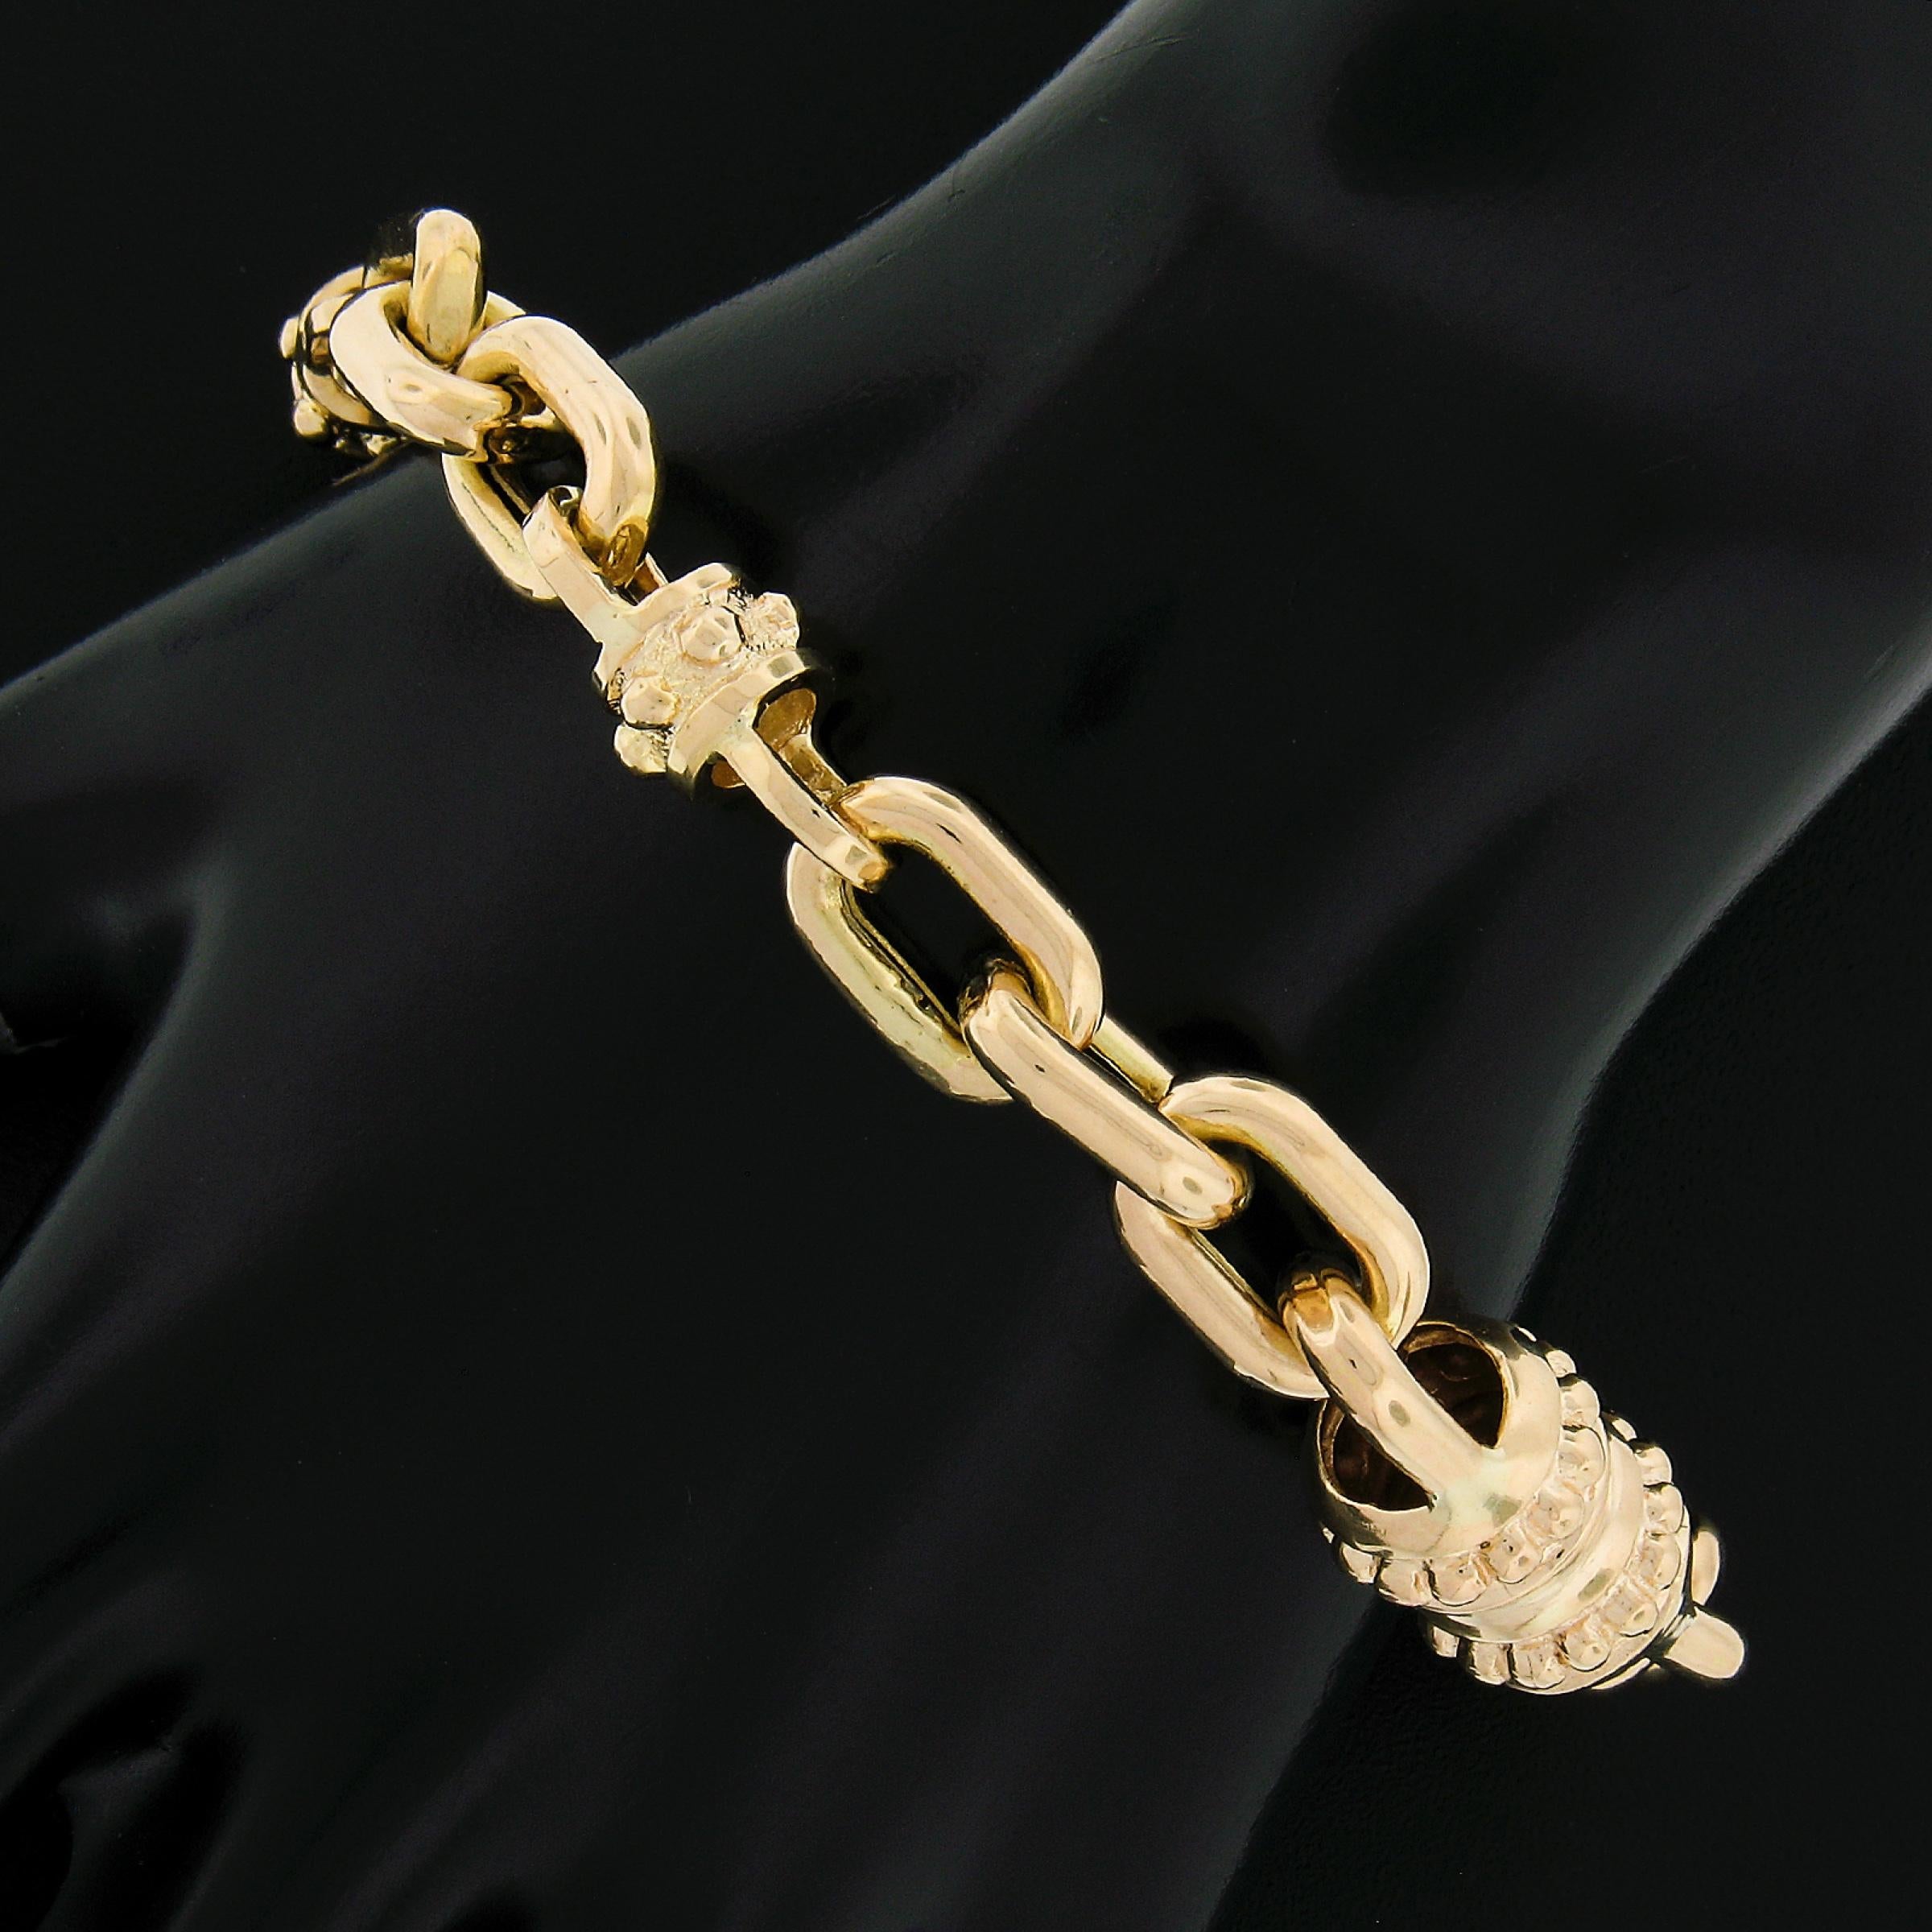 Vous avez sous les yeux un magnifique bracelet unisexe en or jaune 14 carats, composé d'un large câble ouvert et de perles rondes. Le fermoir est une grande pince de homard avec des perles et un travail texturé. Ce bracelet a une belle apparence